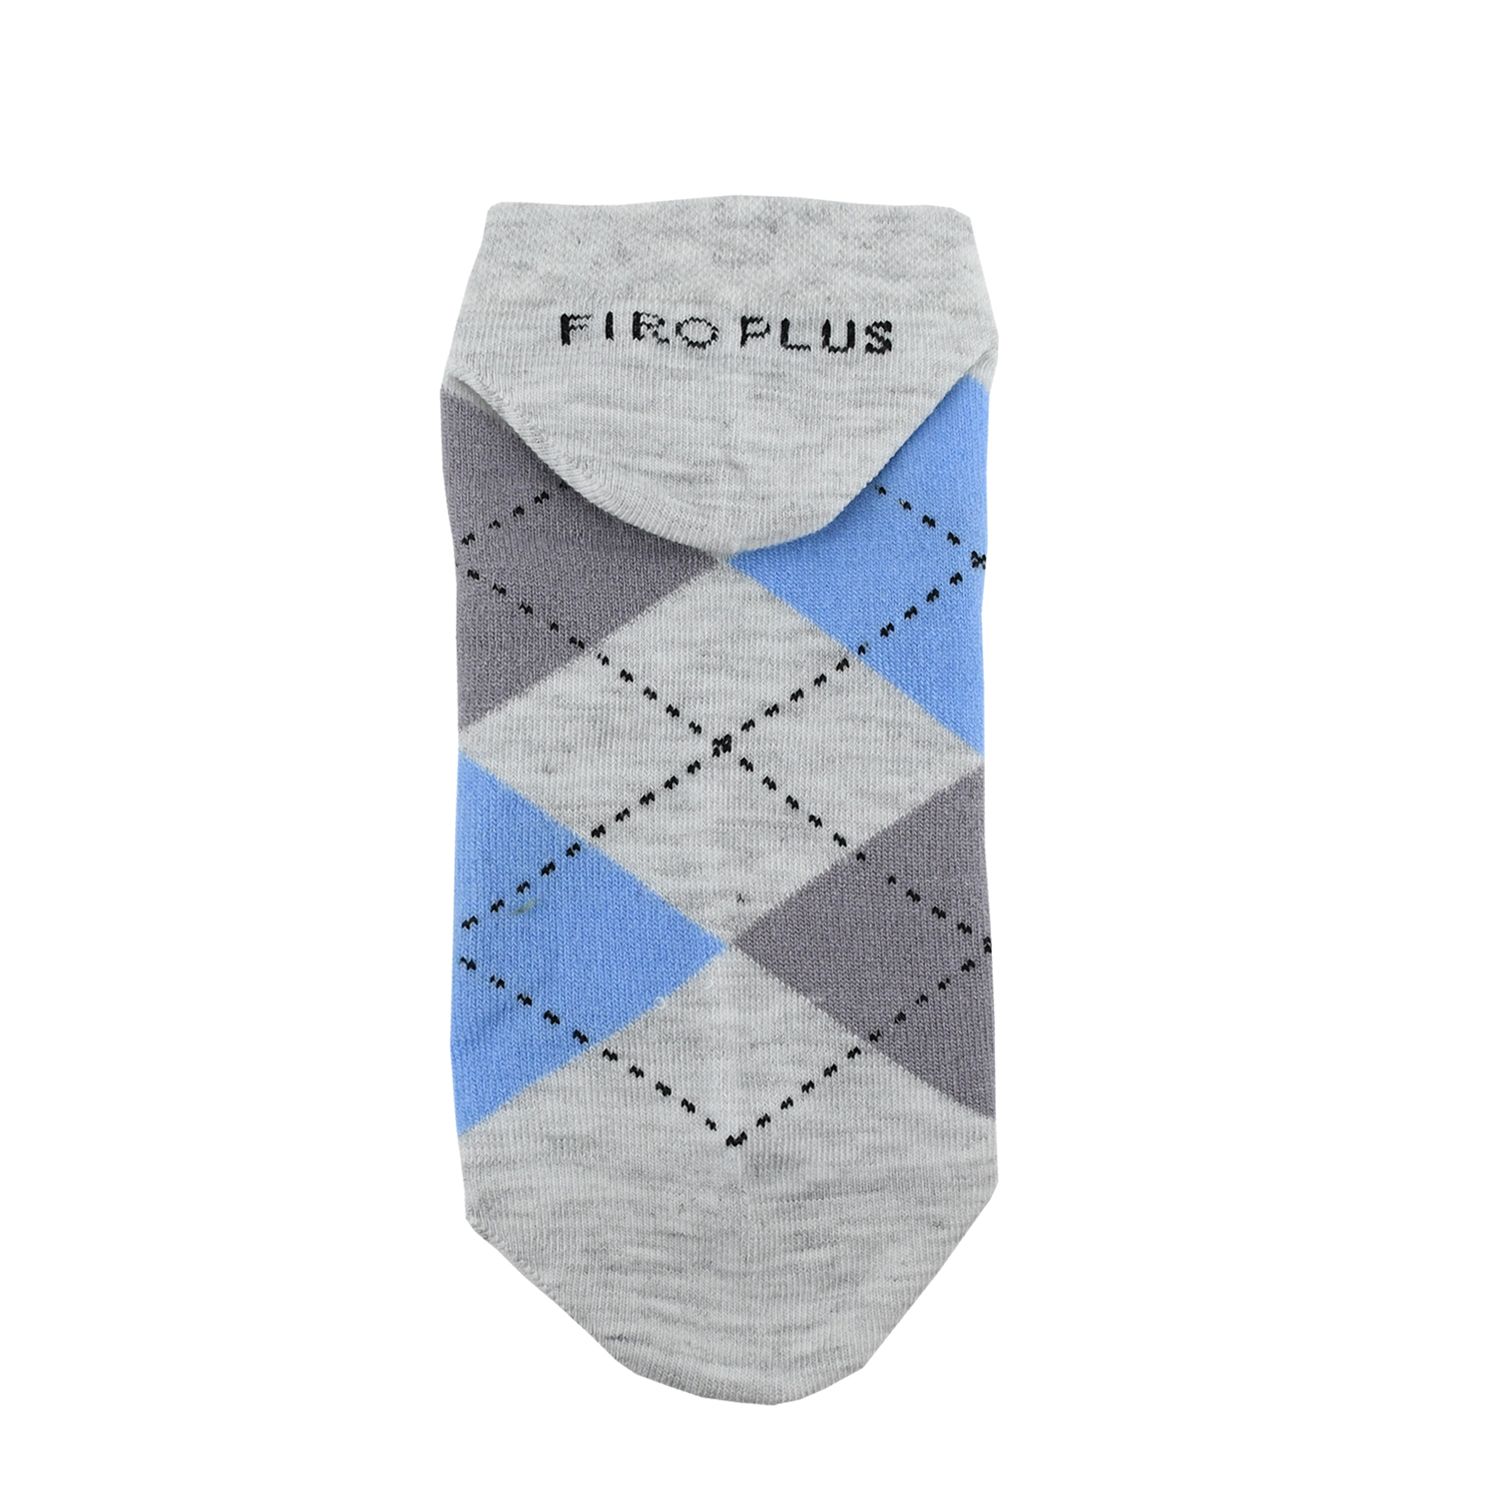 جوراب مردانه فیرو پلاس کد FP3100 مجموعه 6 عددی -  - 5